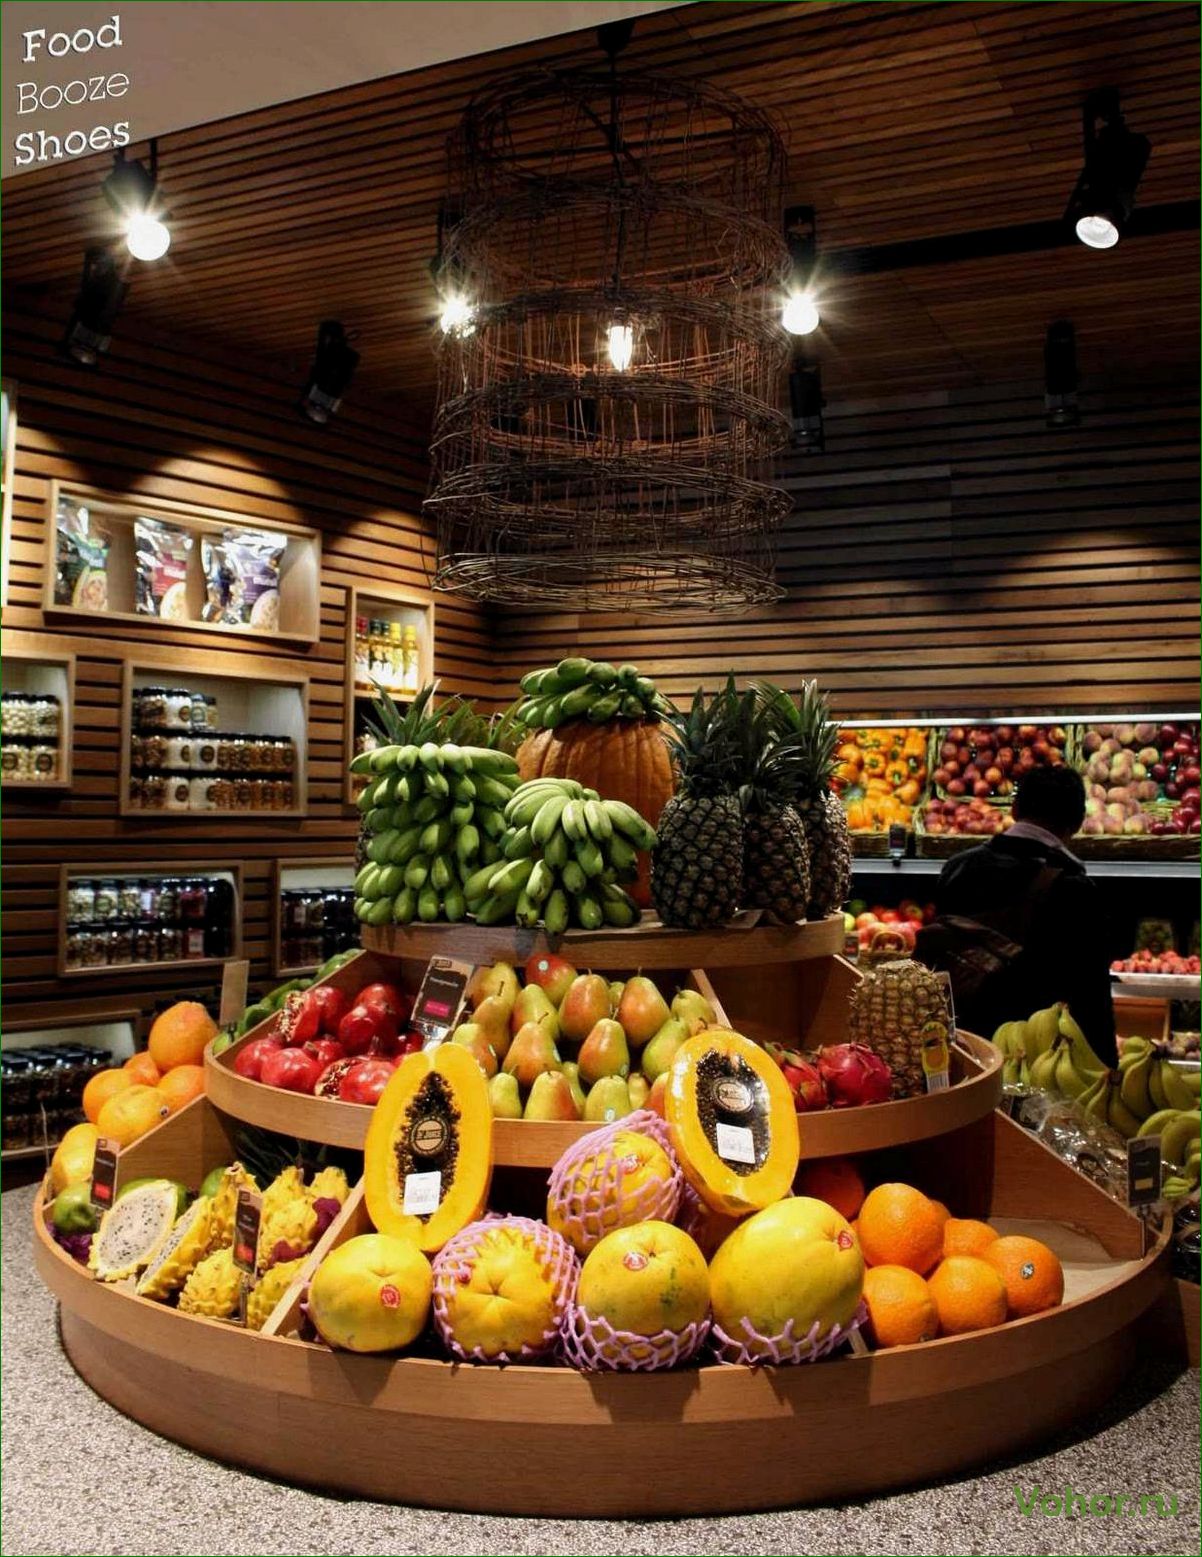 Впечатляющие магазины с яркими и свежими фруктами и овощами, которые вас поразят своей красотой и разнообразием!